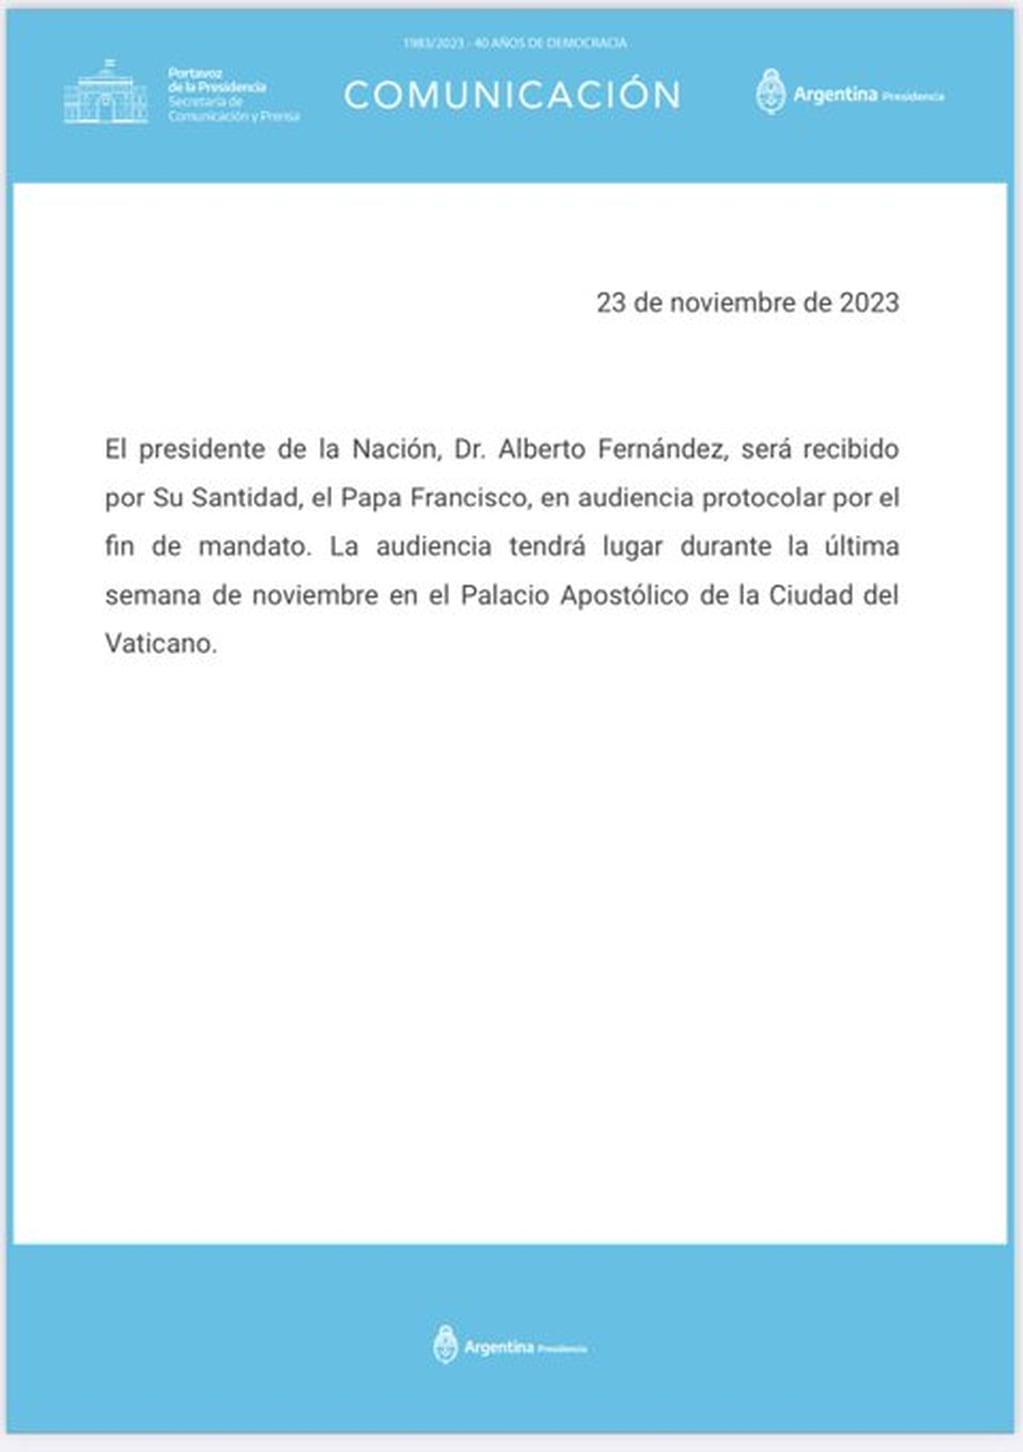 El Papa Francisco se reunirá con Alberto Fernández antes de que termine su mandato - Twitter